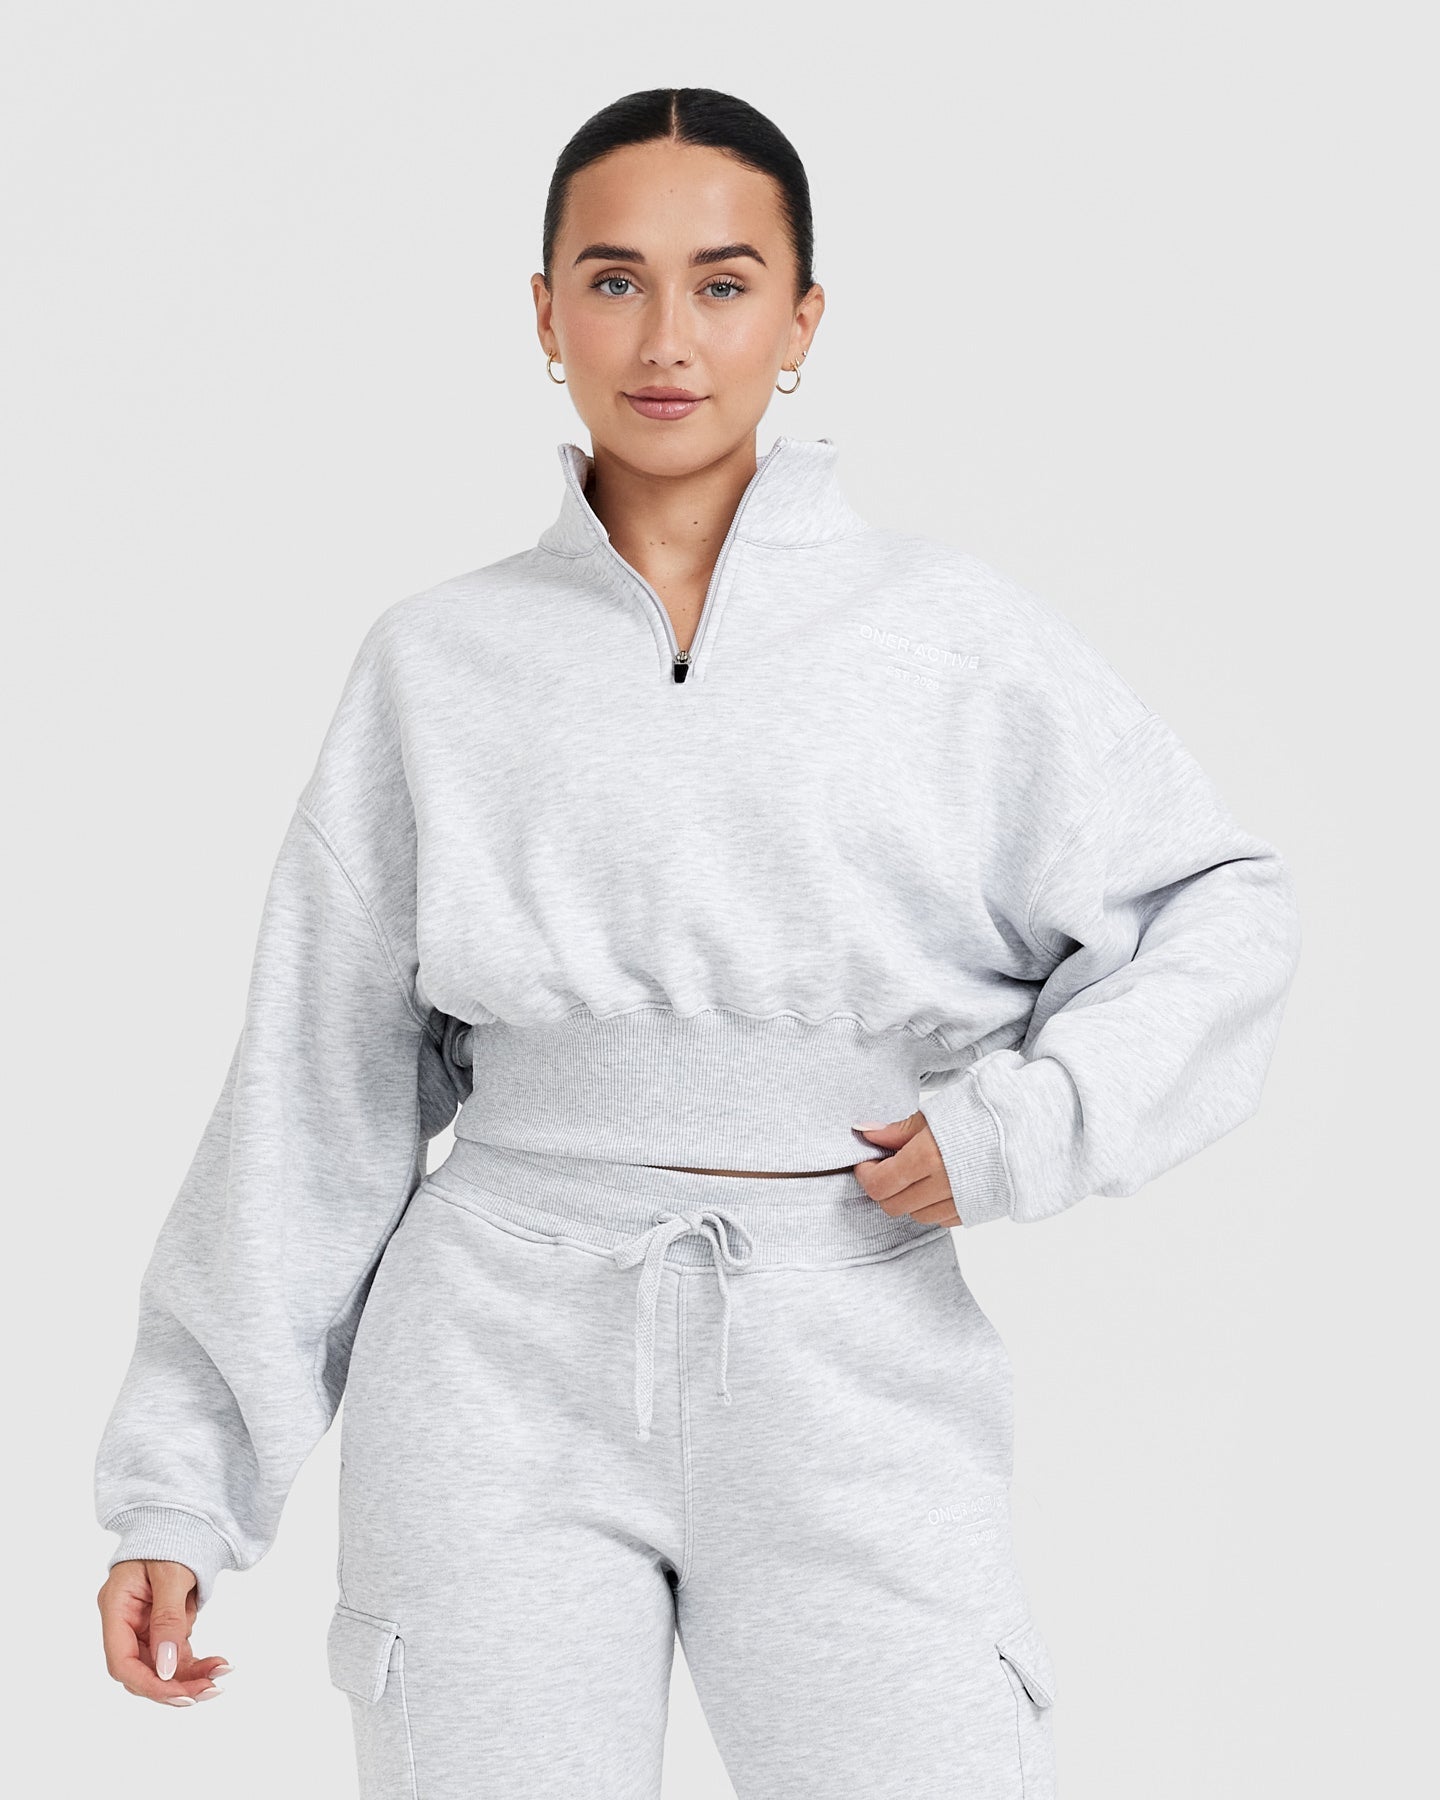 Crop Sweatshirt for Women - Light Grey Marl - 1/4 Zip | Oner Active UK